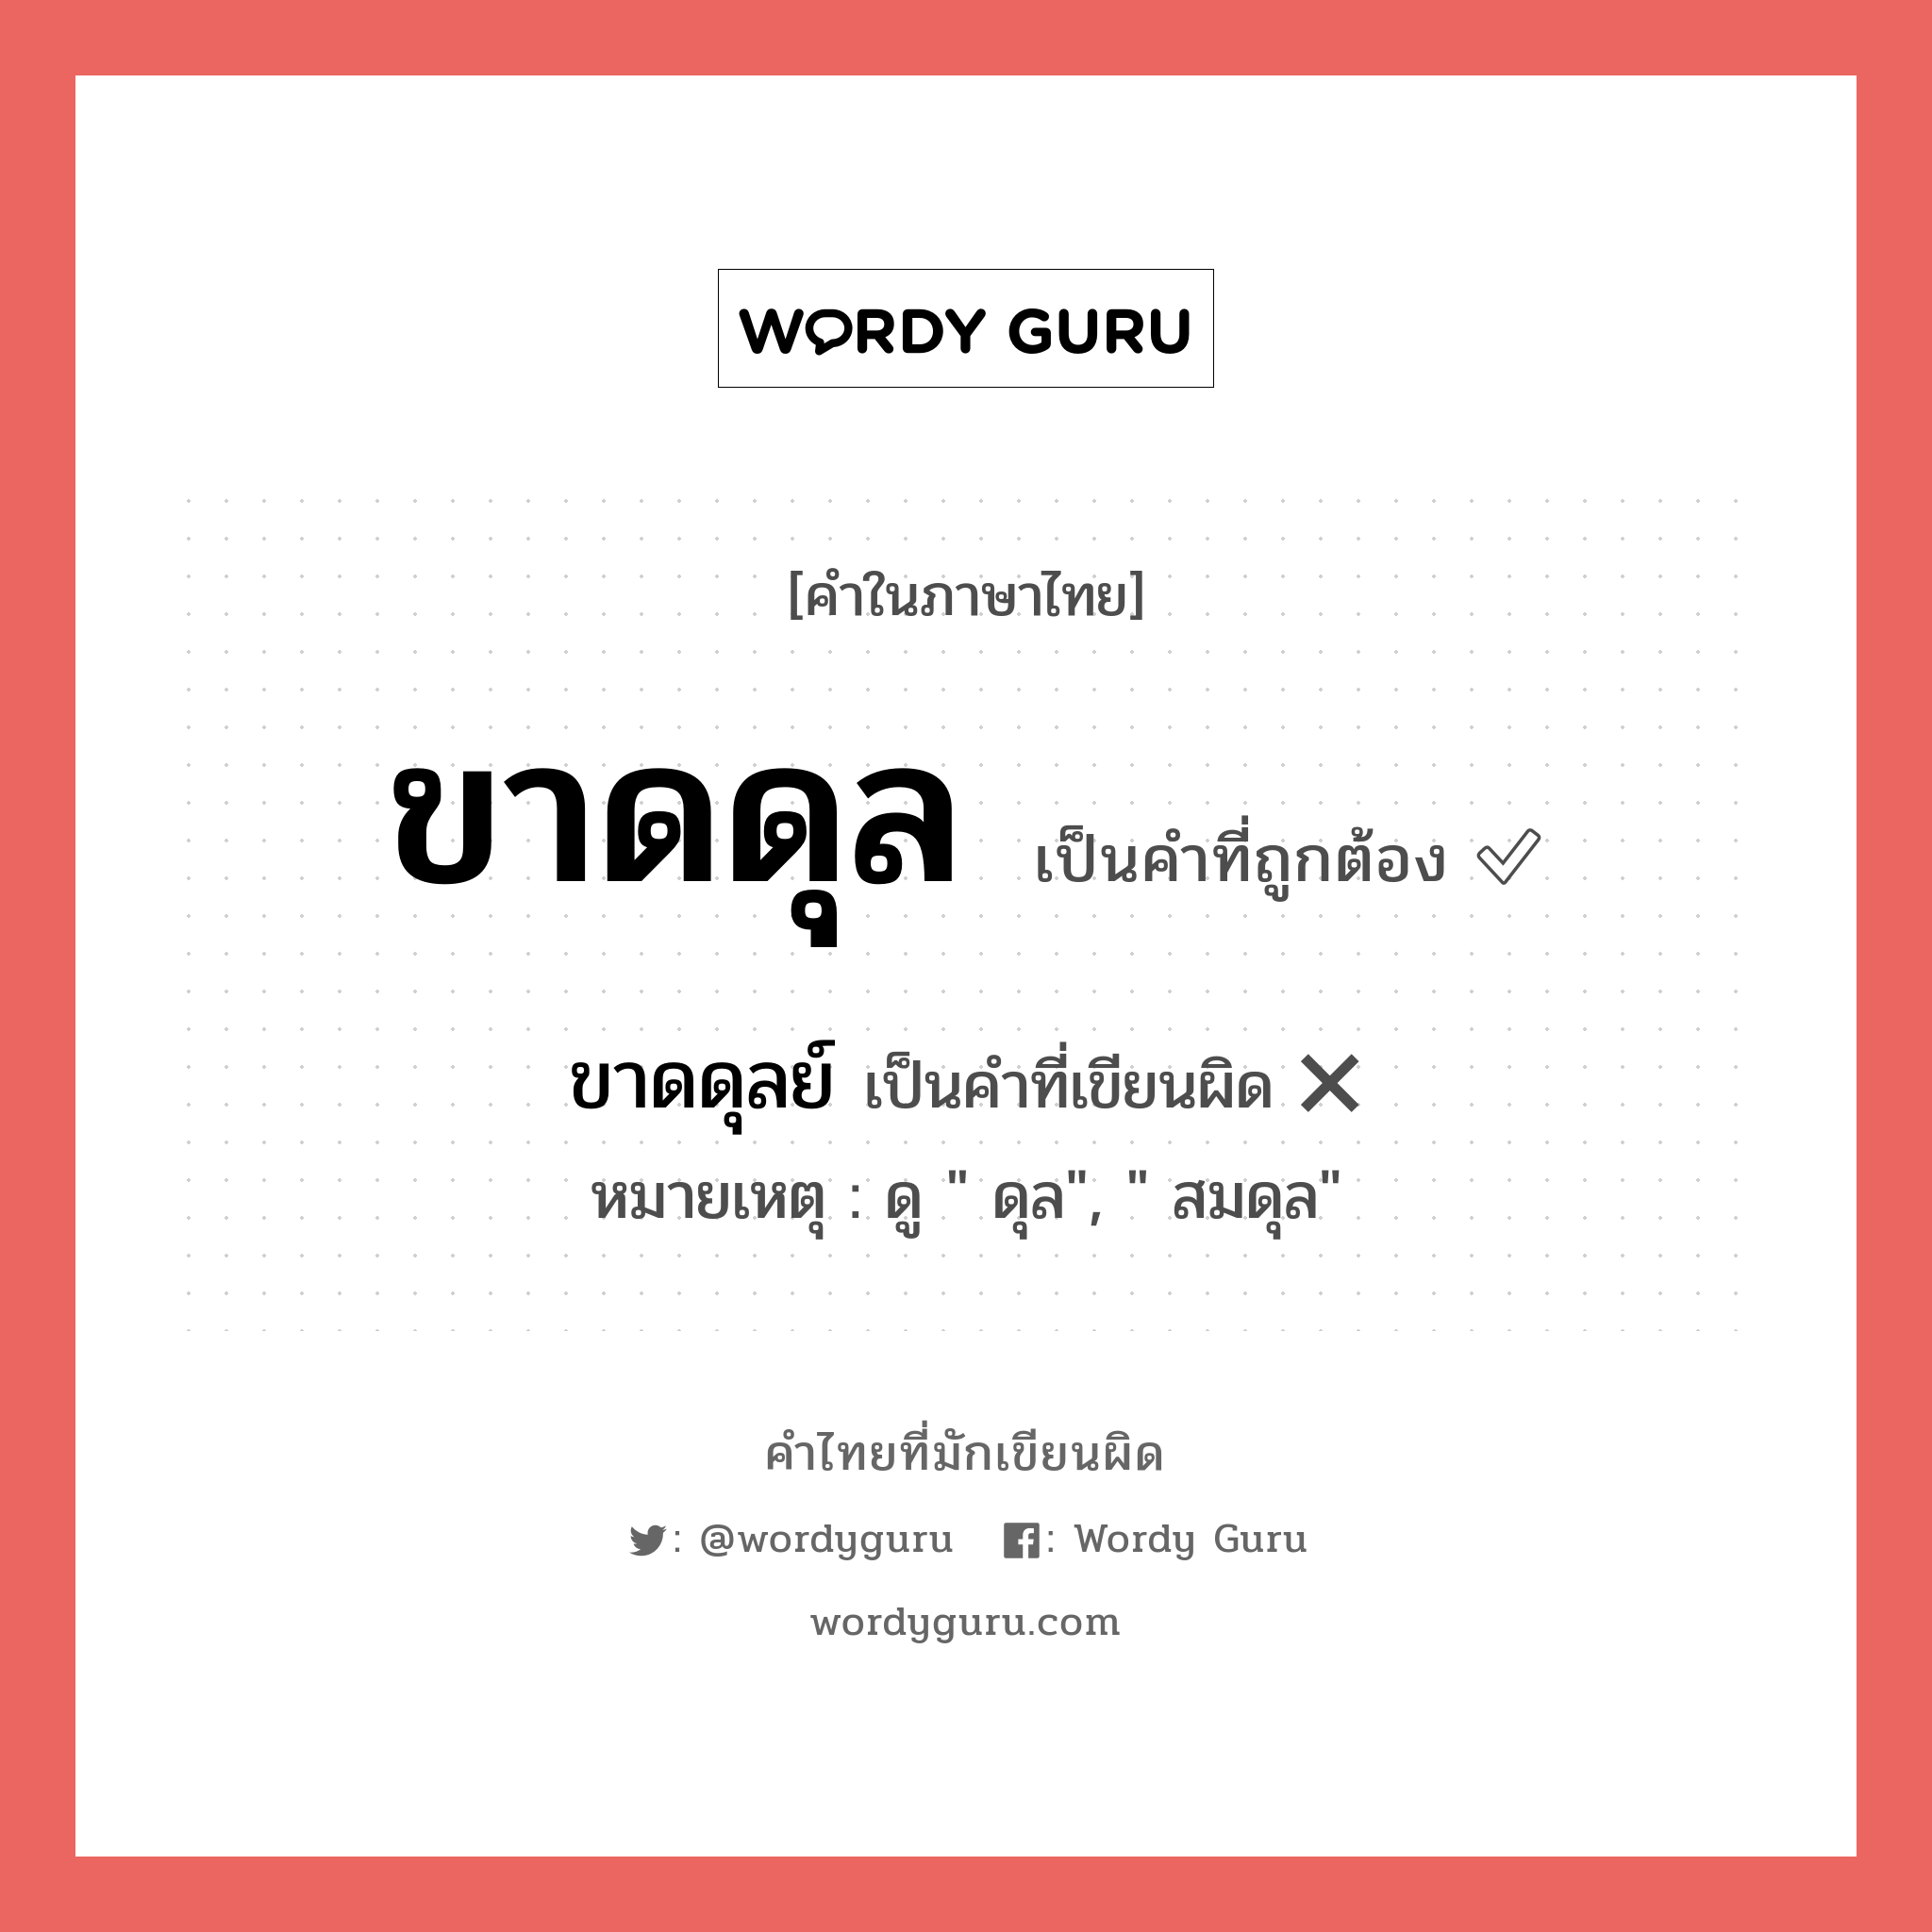 ขาดดุลย์ หรือ ขาดดุล คำไหนเขียนถูก?, คำในภาษาไทยที่มักเขียนผิด ขาดดุลย์ คำที่ผิด ❌ ขาดดุล หมายเหตุ ดู " ดุล", " สมดุล"